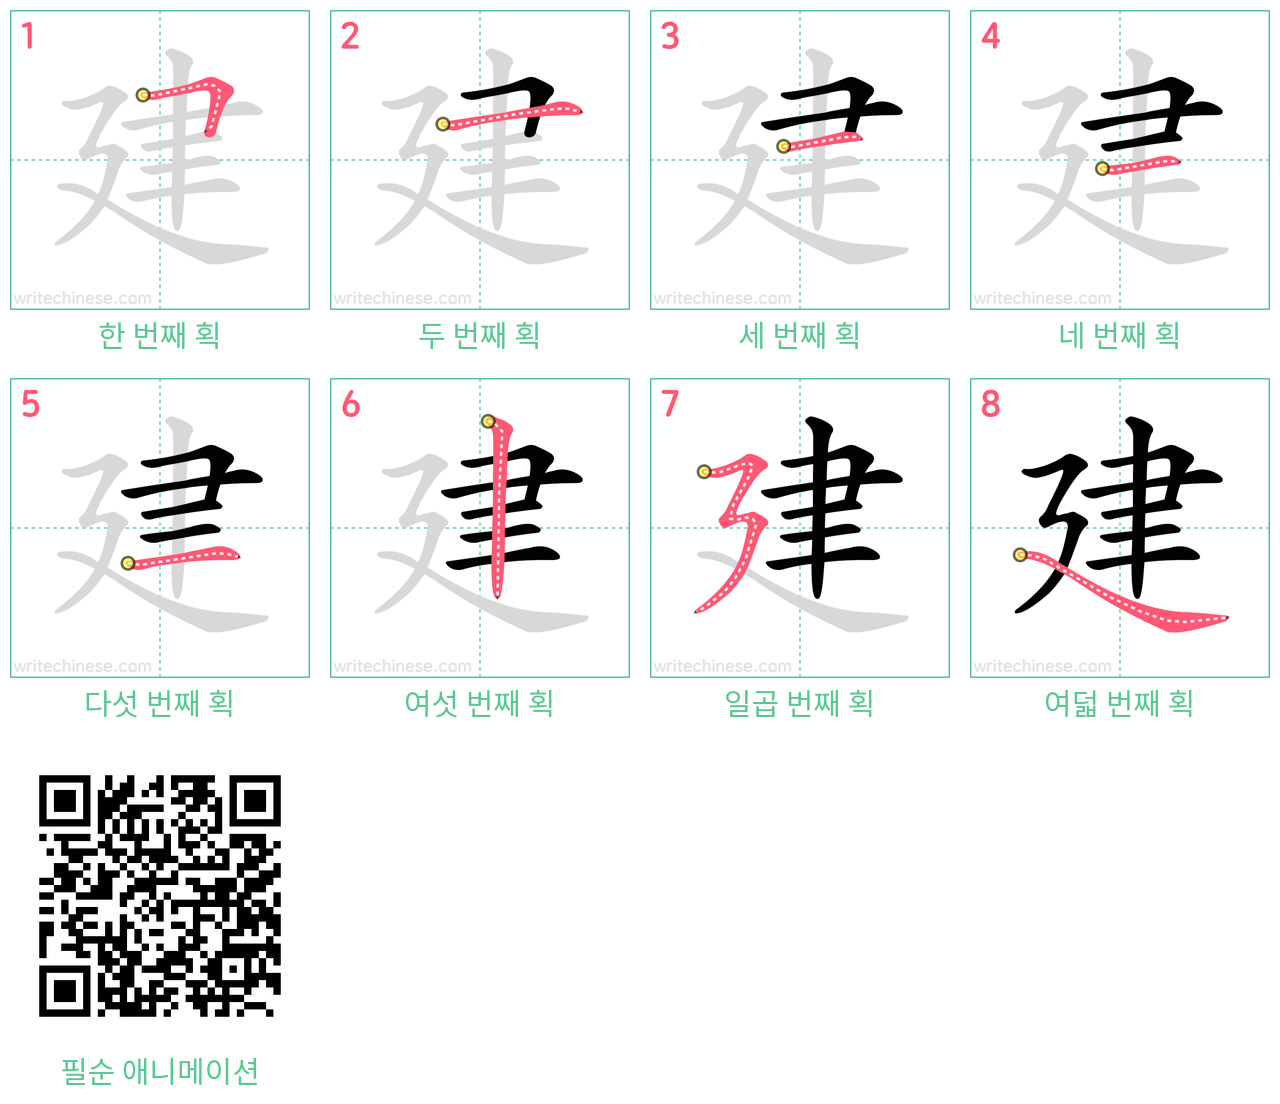 建 step-by-step stroke order diagrams